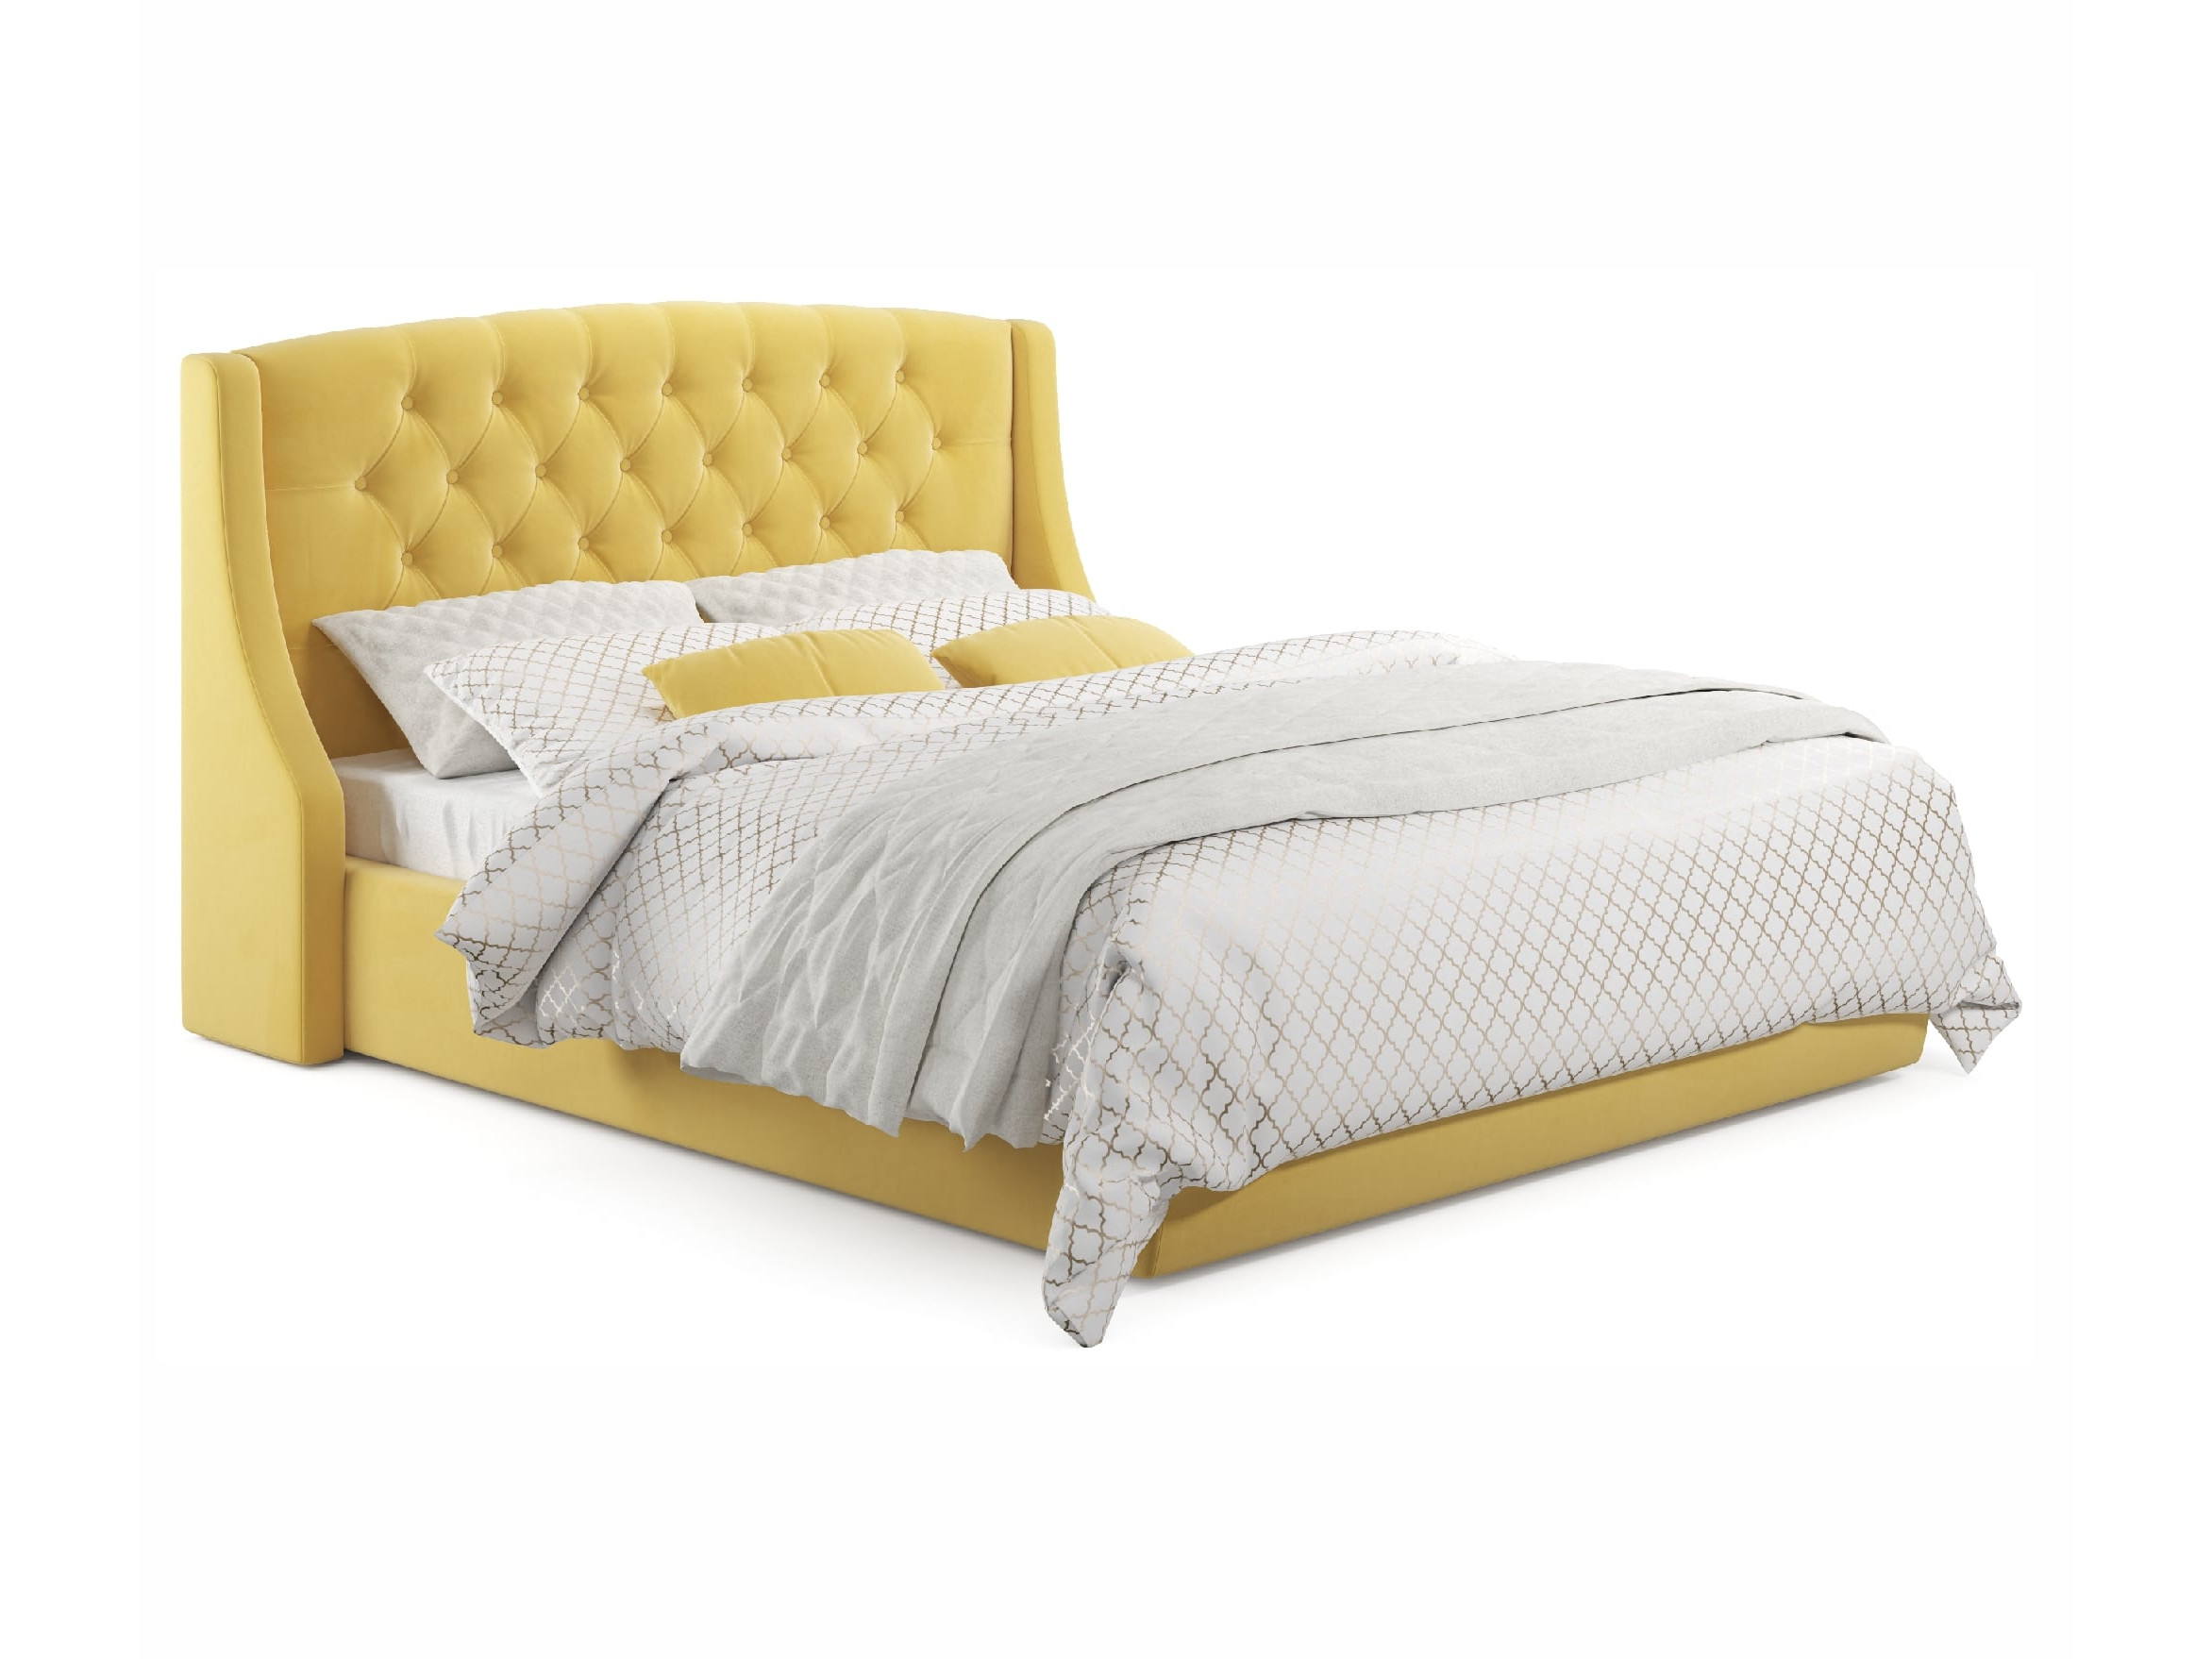 Мягкая кровать Stefani 1800 желтая с ортопед. основанием с мягкая кровать stefani 1800 желтая с ортопед основанием с матрасом астра желтый желтый велюр дсп